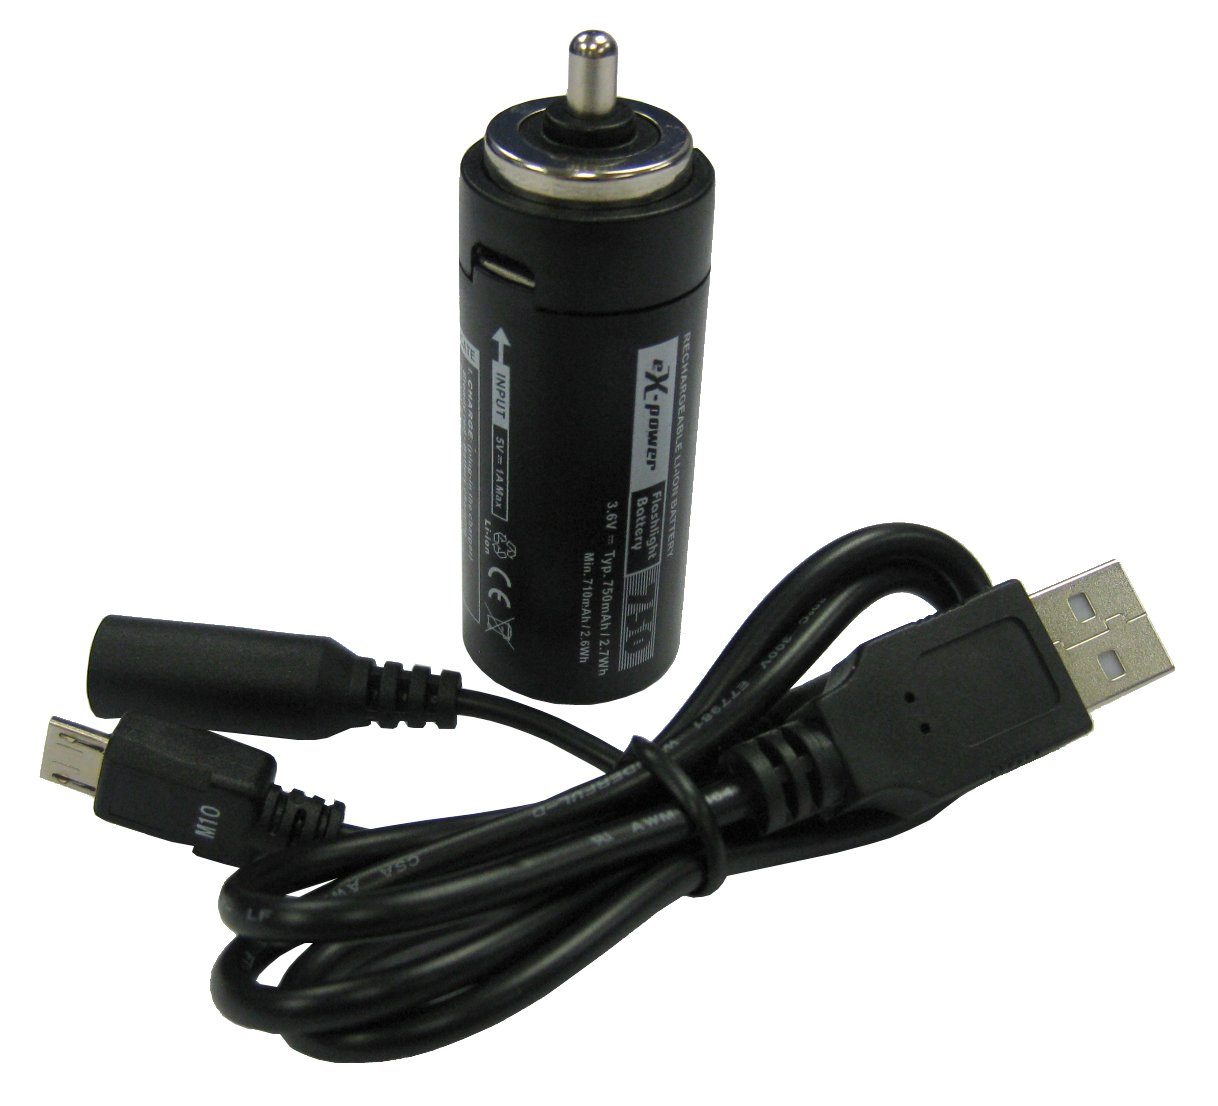 PowerSmart FB0001.184 Akku als Ersatz für 3 AAA Batterien im Batteriehalter - Taschenlampe, LED Taschenlampe, Baumarkttaschenlampe Lithium-ion (Li-ion) 1400 mAh (3,6 V)